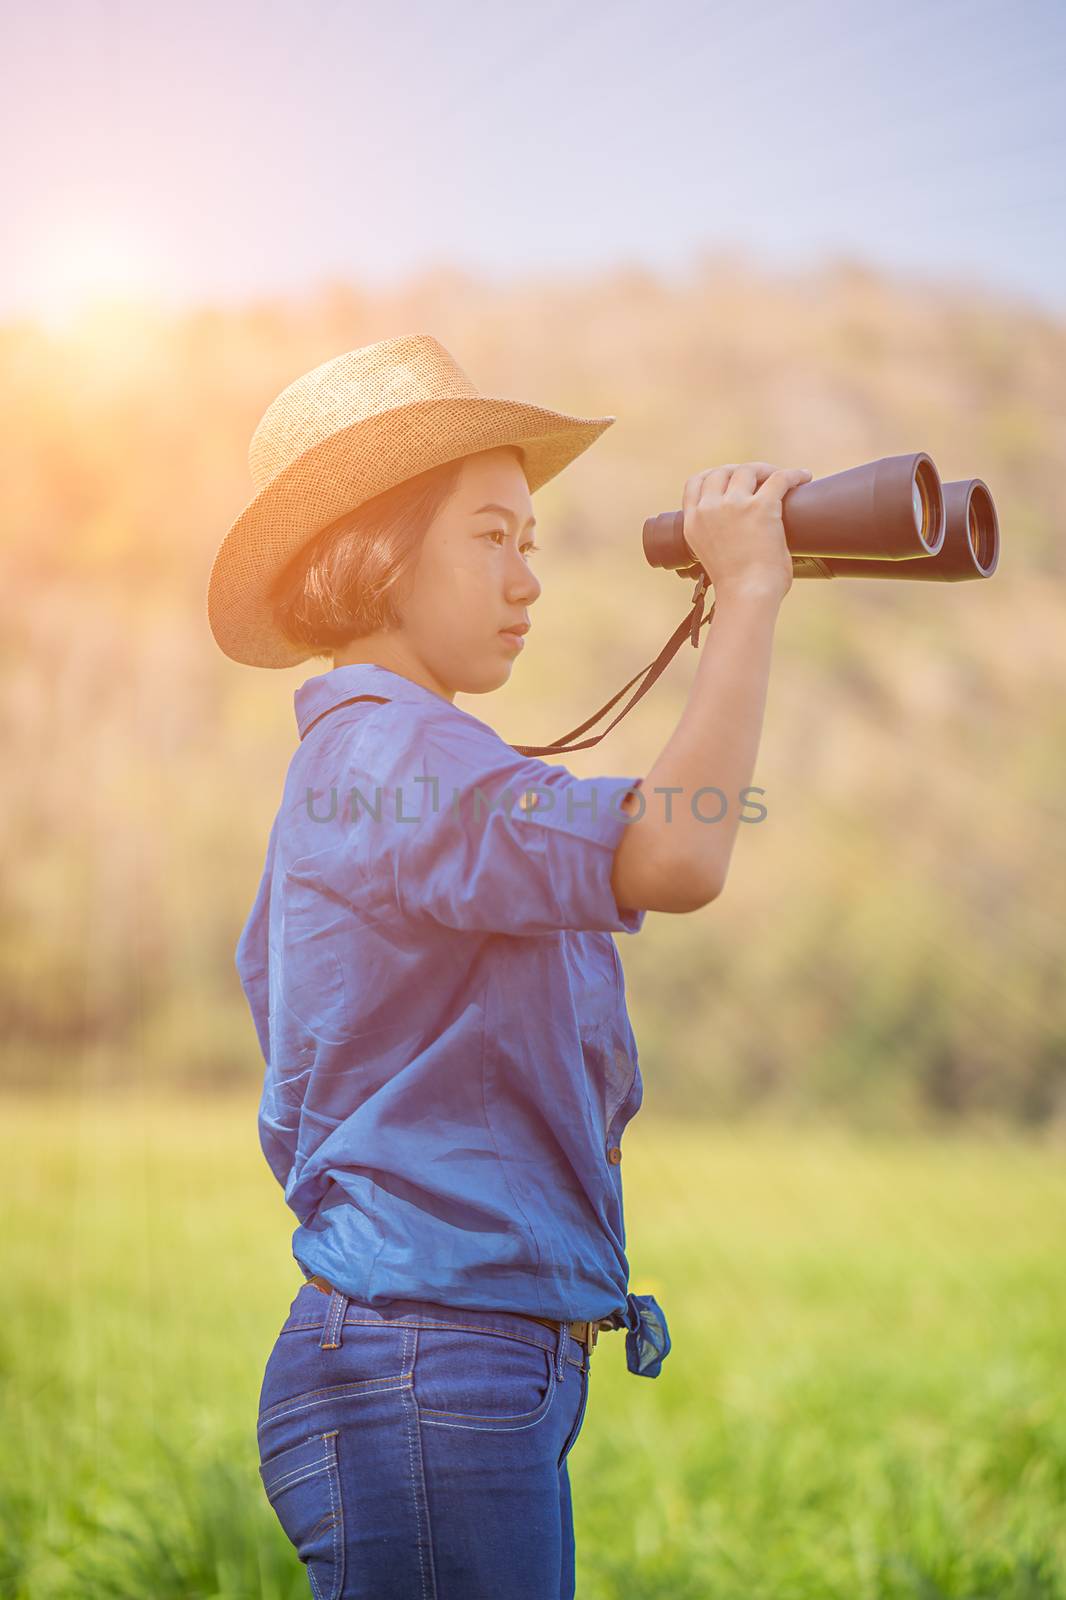 Woman wear hat and hold binocular in grass field by stoonn